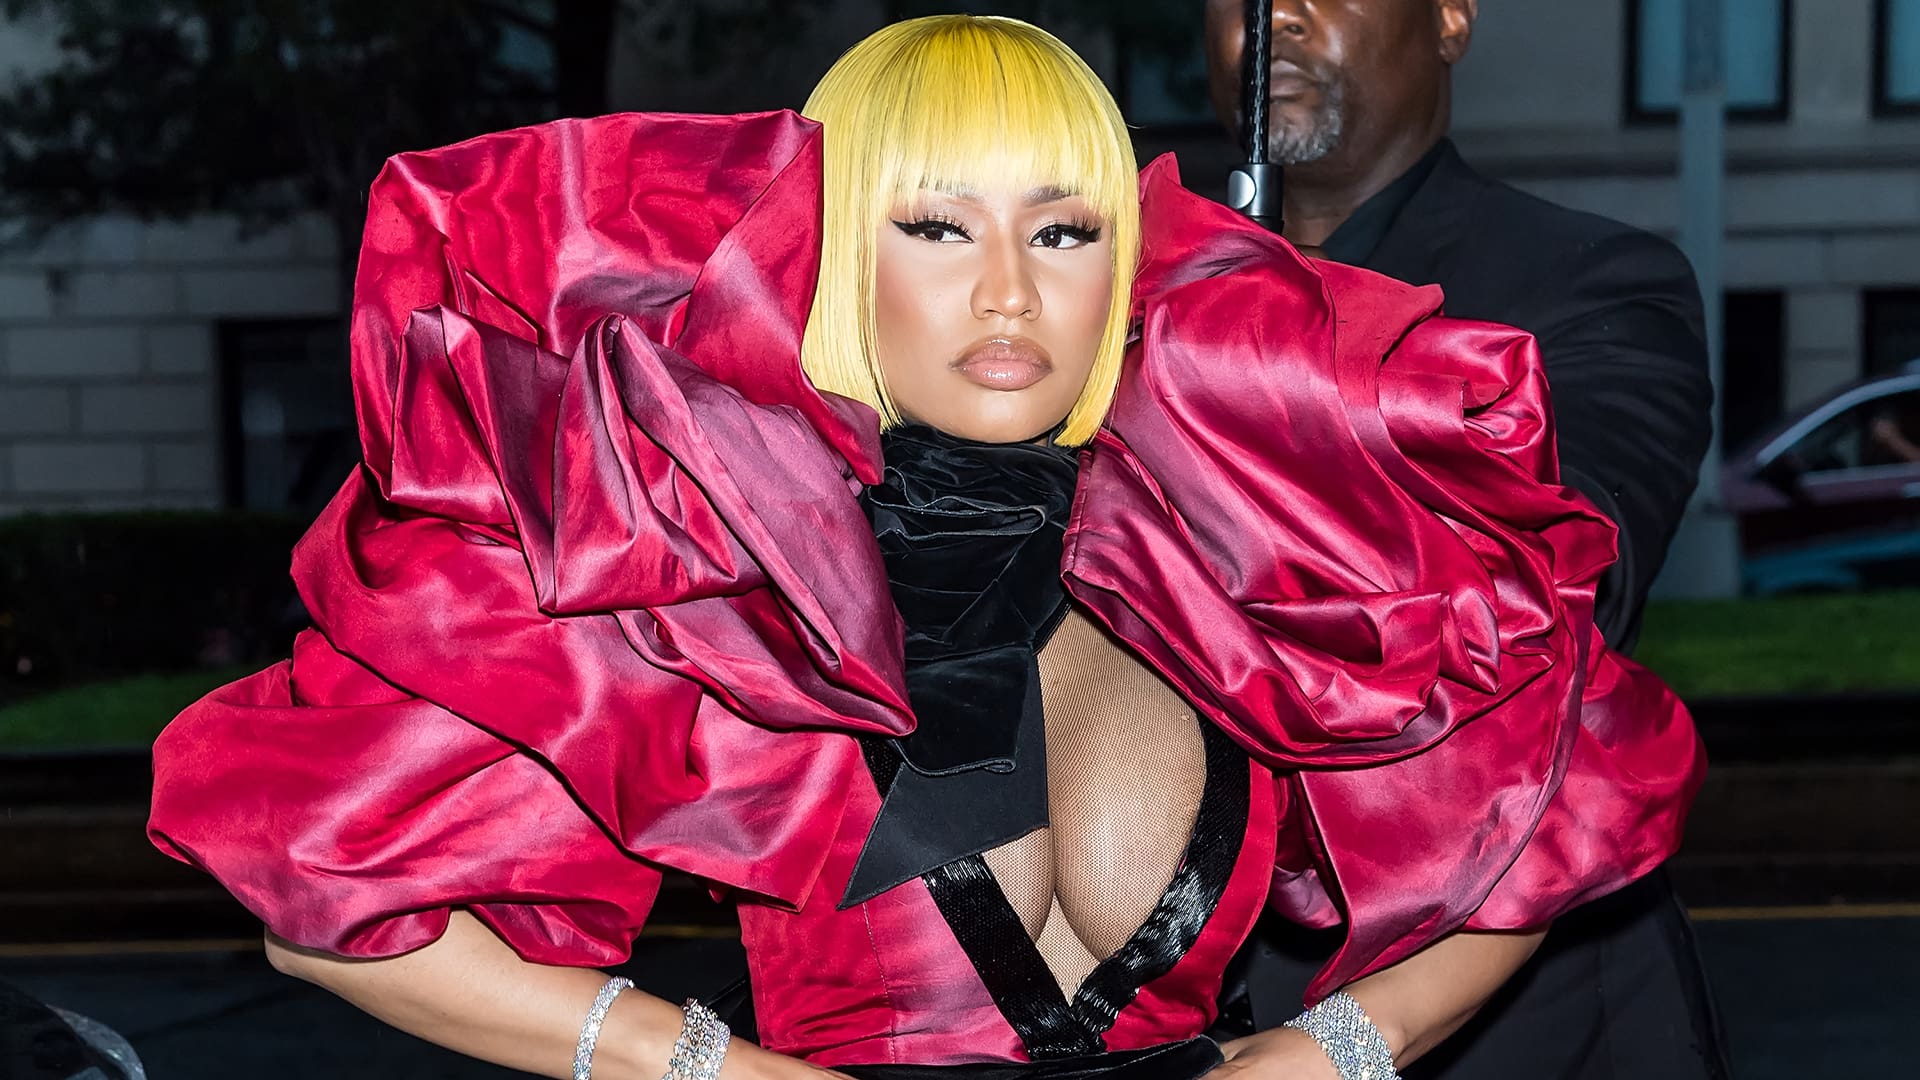 Nicki Minaj Explains Why She Pulled Out Of The Show In Saudi Arabia